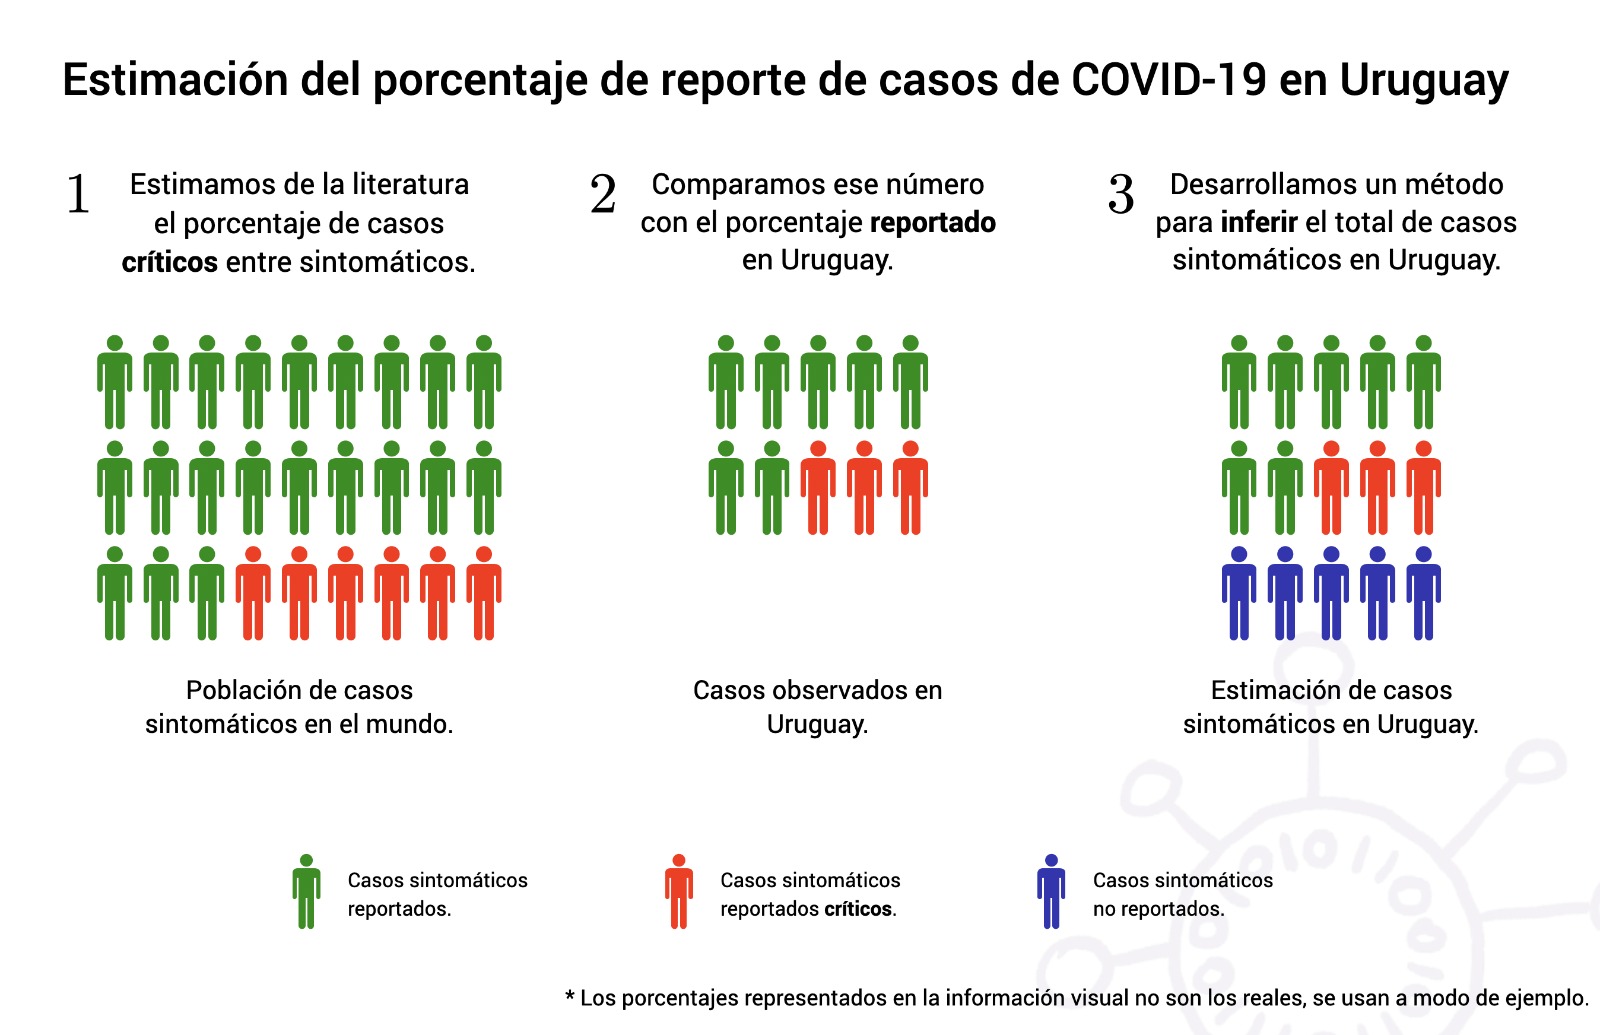 Estimacion reporte COVID-19 en Uruguay